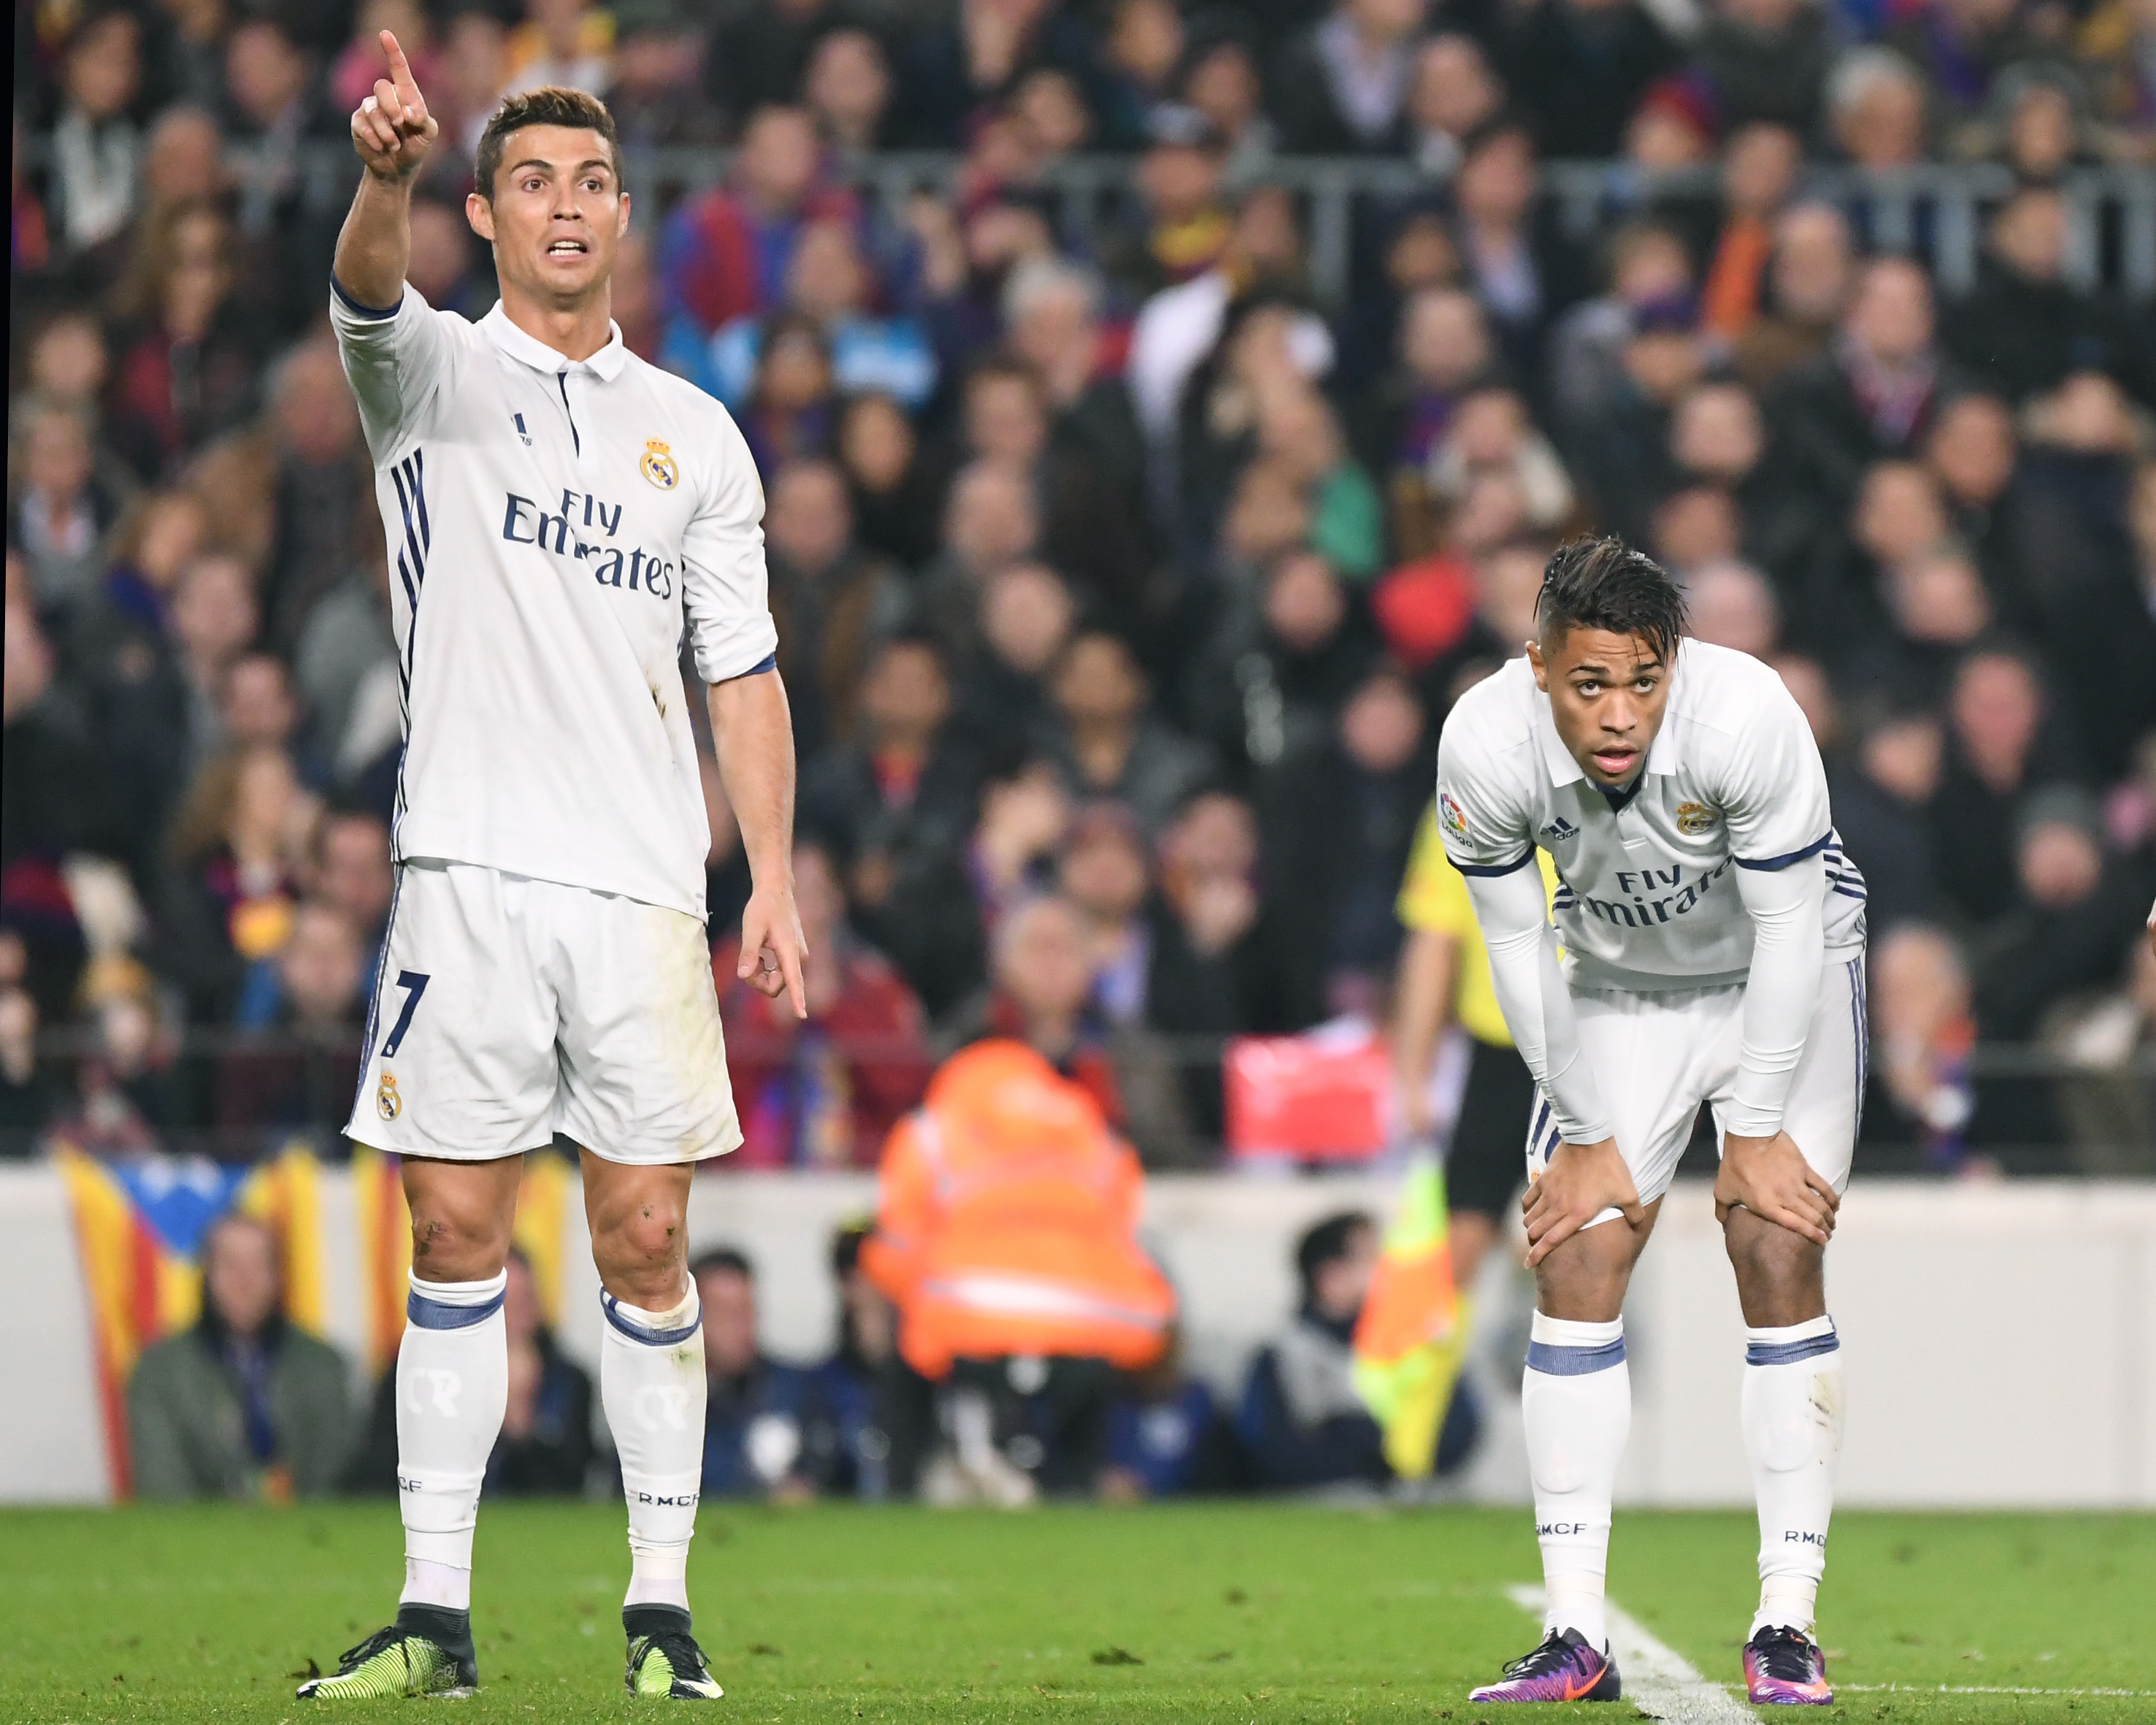 C. Ronaldo's No.7 Jersey at Real Madrid 